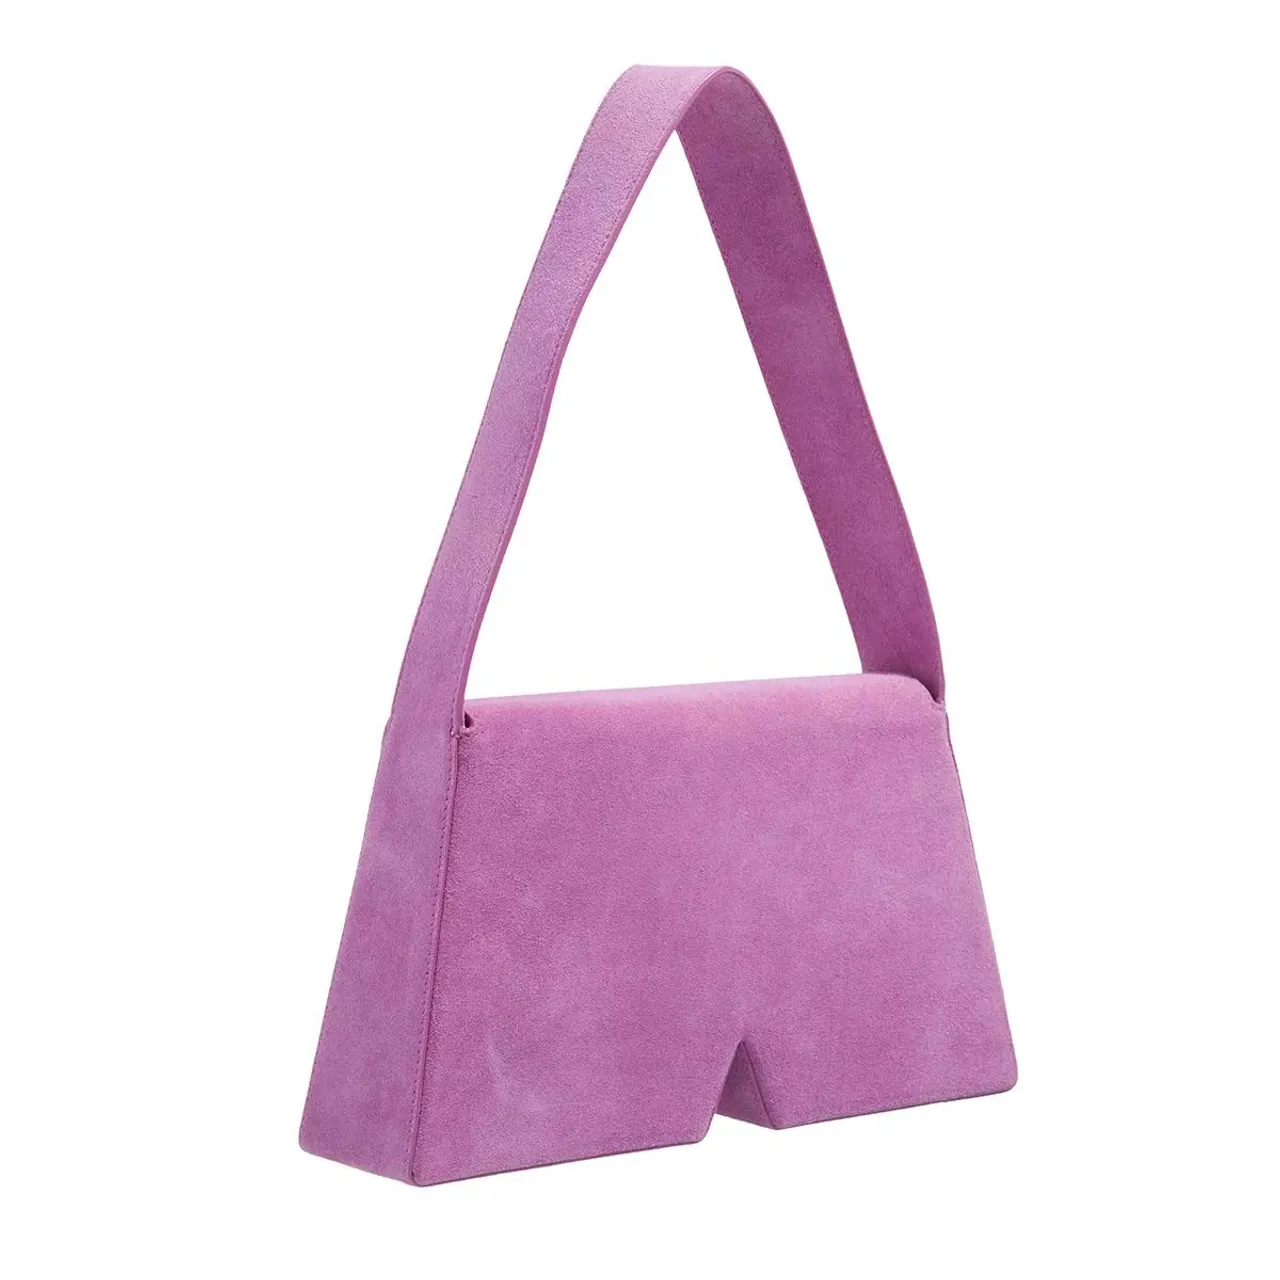 Karl Lagerfeld Hobo Bags - Icon K Shoulderbag Suede - violet - Hobo Bags for ladies